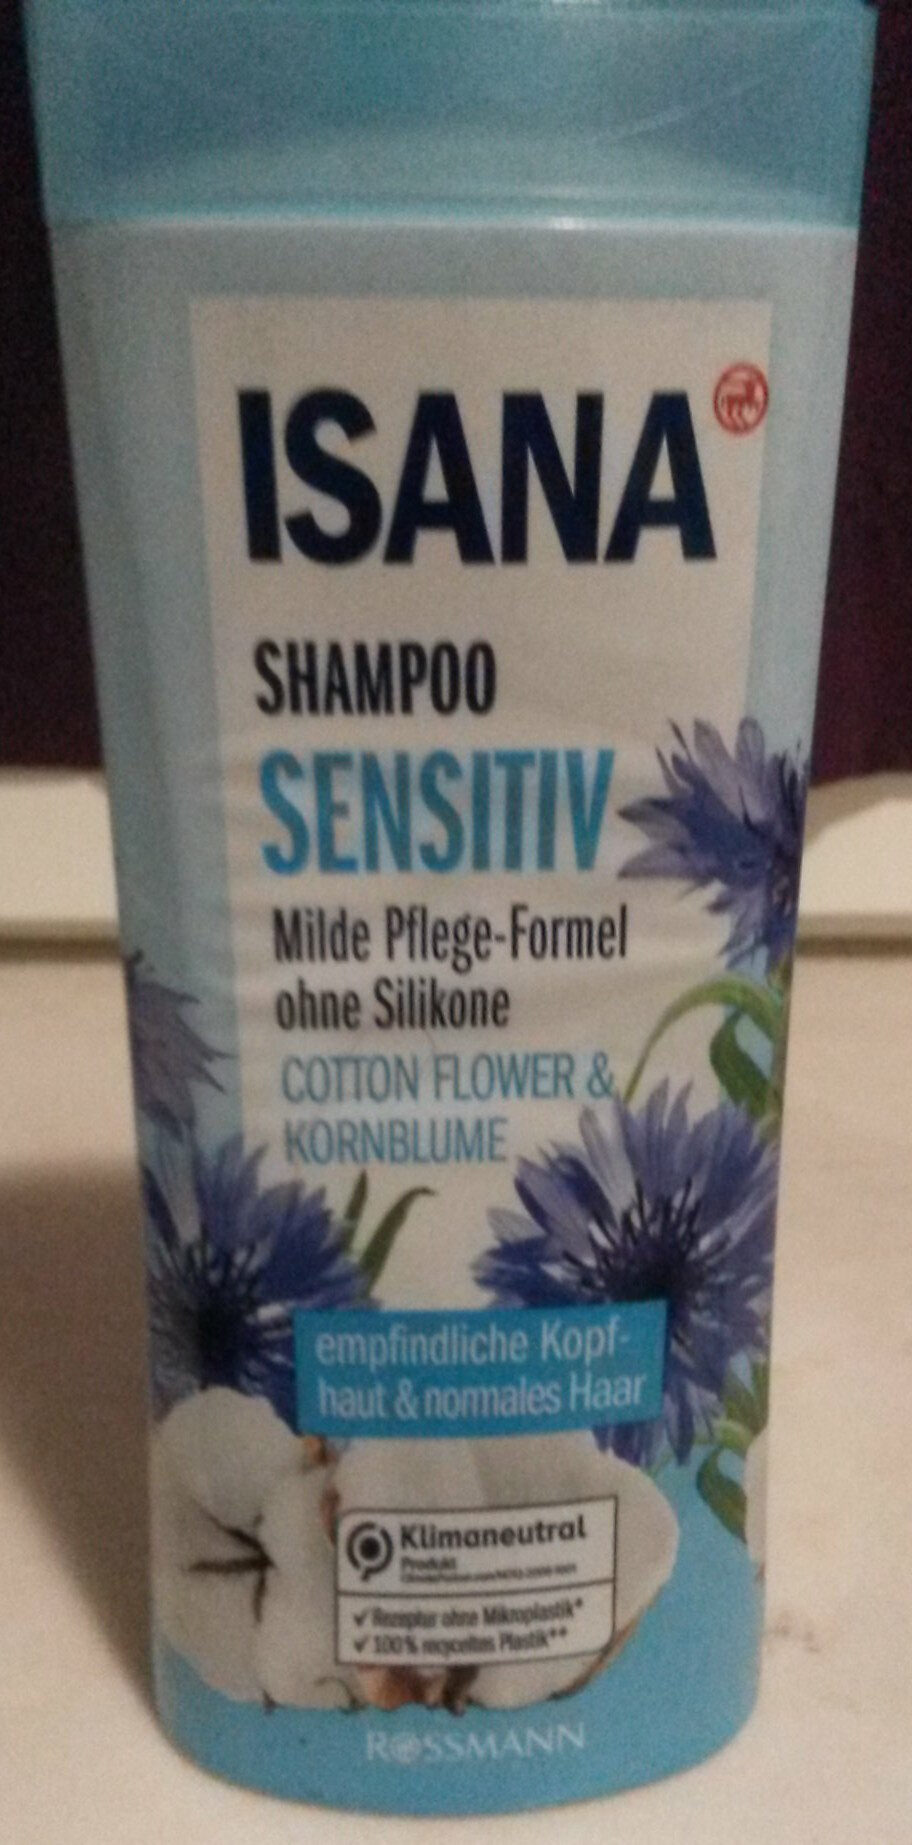 Shampoo sensitiv - Product - de